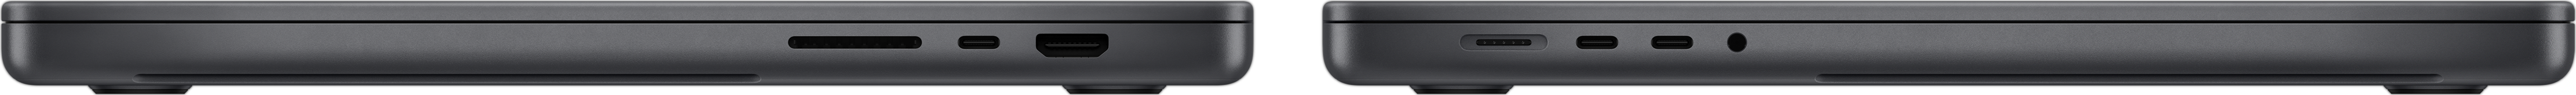 Imagem da lateral do MacBook Pro que mostra o slot para cartão SDXC, três portas Thunderbolt 4, a porta HDMI, a porta MagSafe 3 para recarga e a entrada para fones de ouvido.